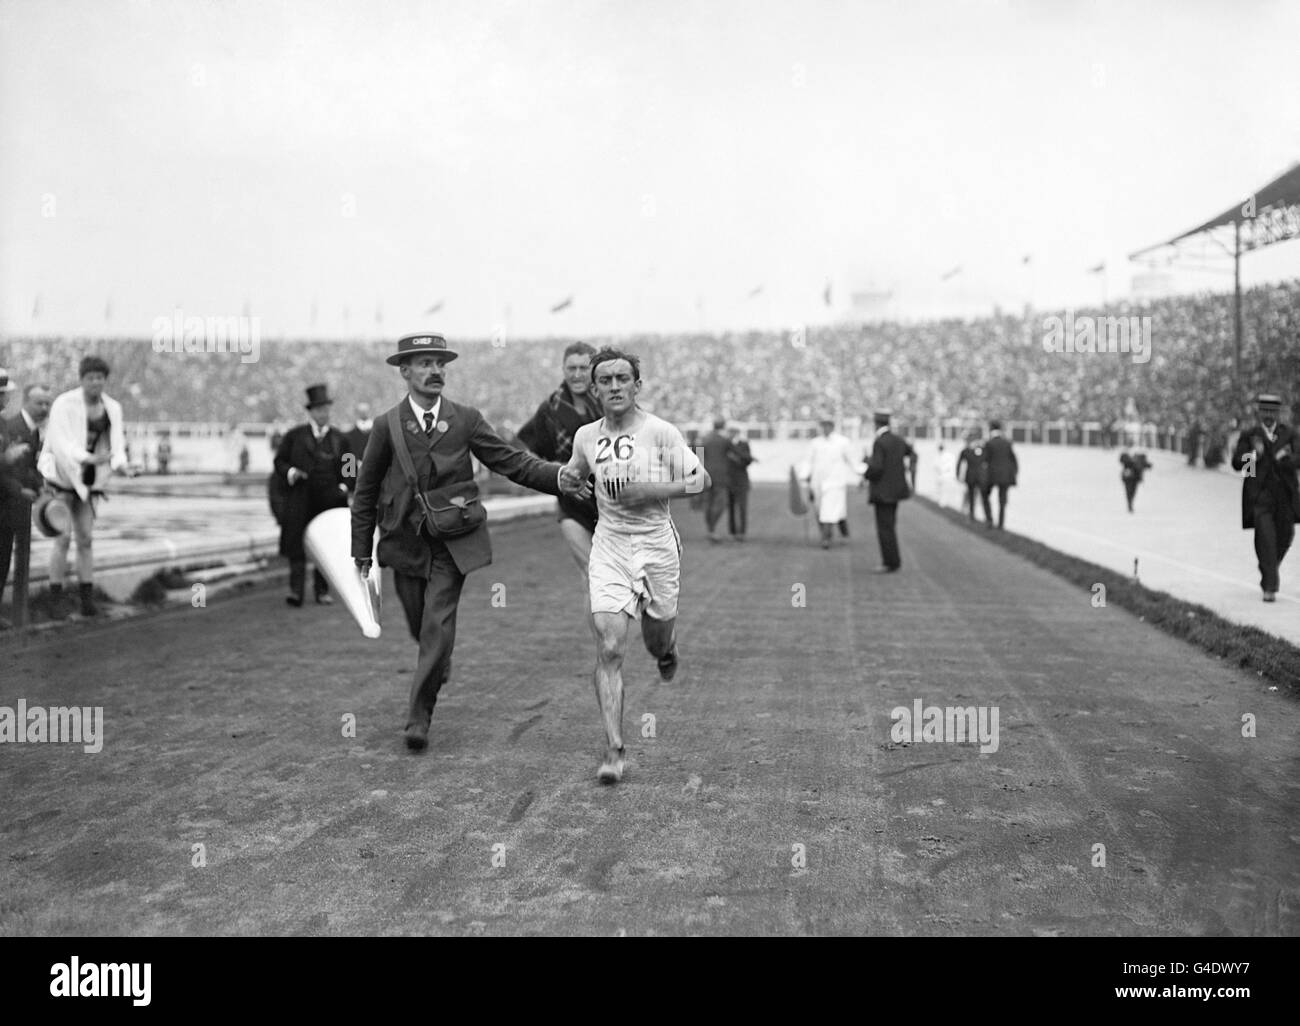 6 aprile: In questa giornata del 1896, sono iniziate ad Atene le prime Olimpiadi moderne. Qui è raffigurato l'atleta americano Johnny Hayes, che sta gareggiando nella corsa della maratona alle Olimpiadi estive 1908 a Londra. Foto Stock